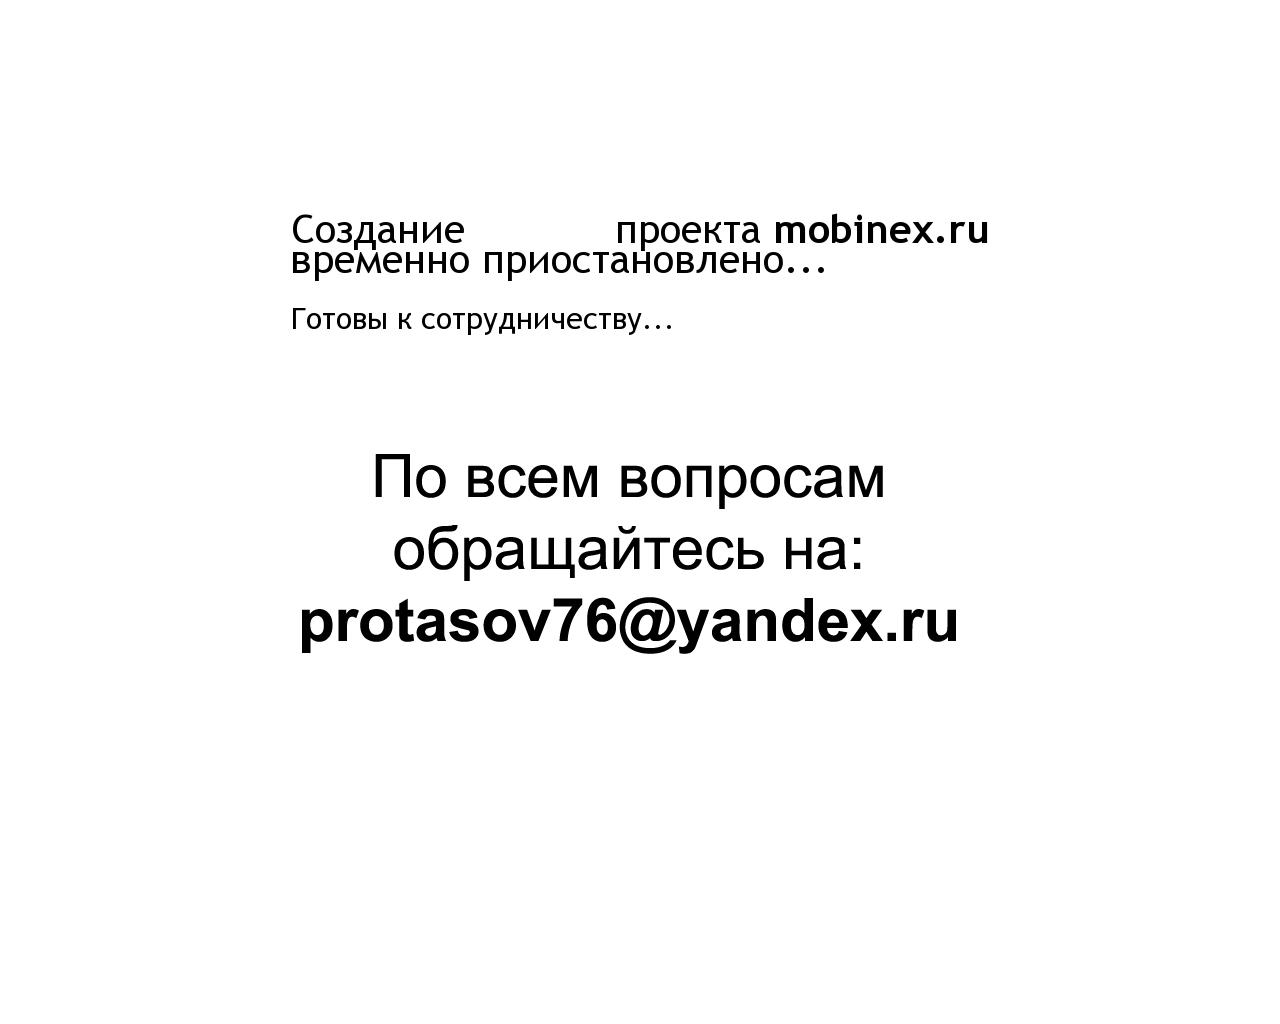 Изображение сайта mobinex.ru в разрешении 1280x1024